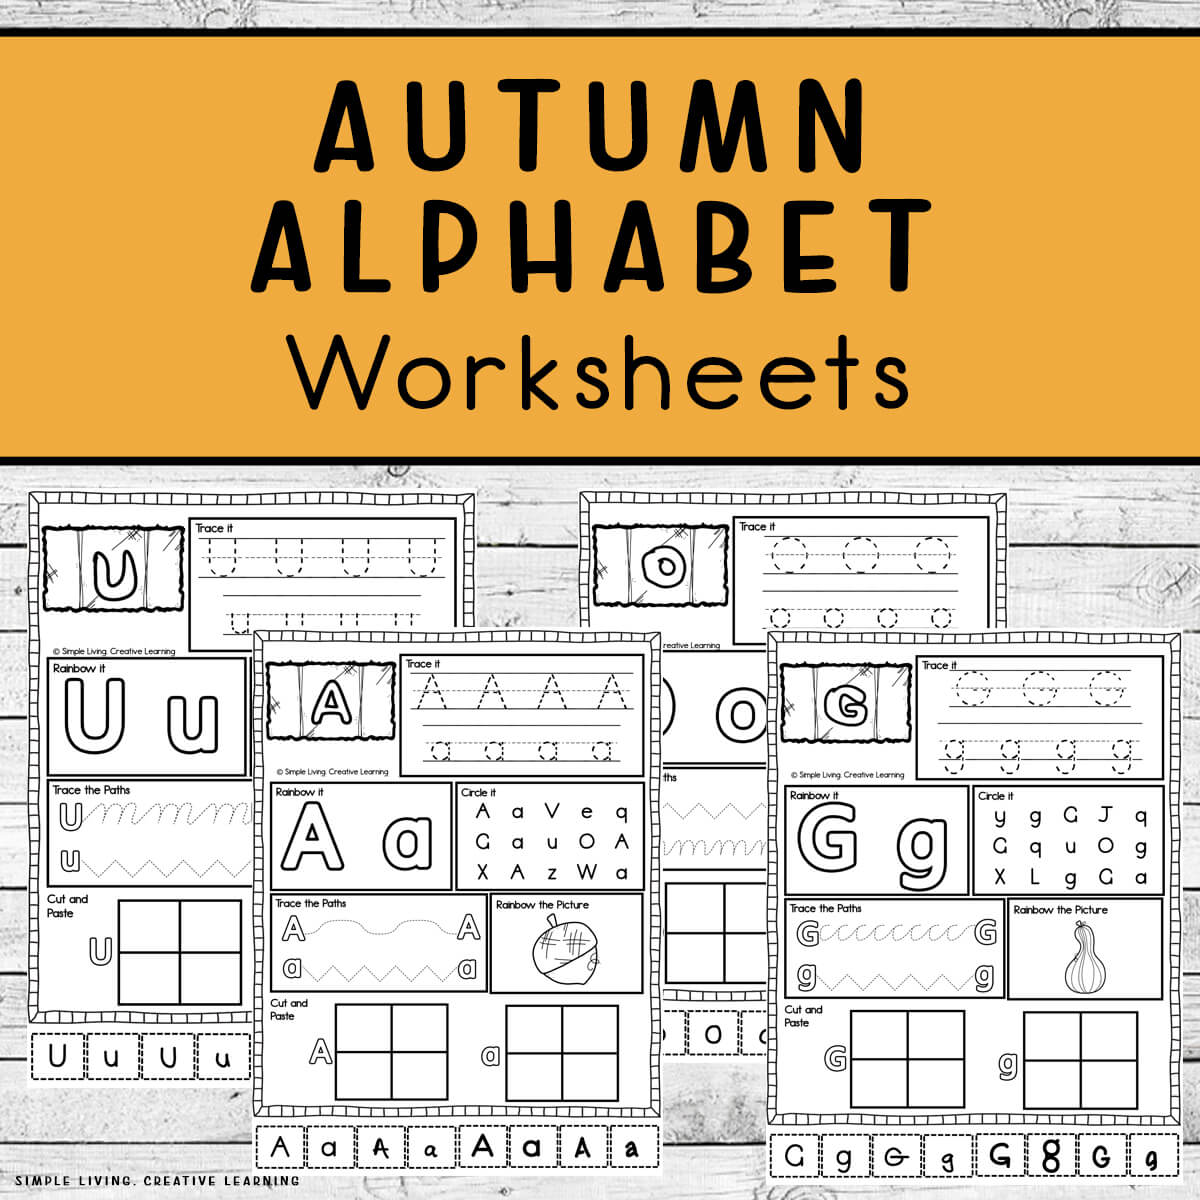 Autumn Alphabet Worksheets four pages